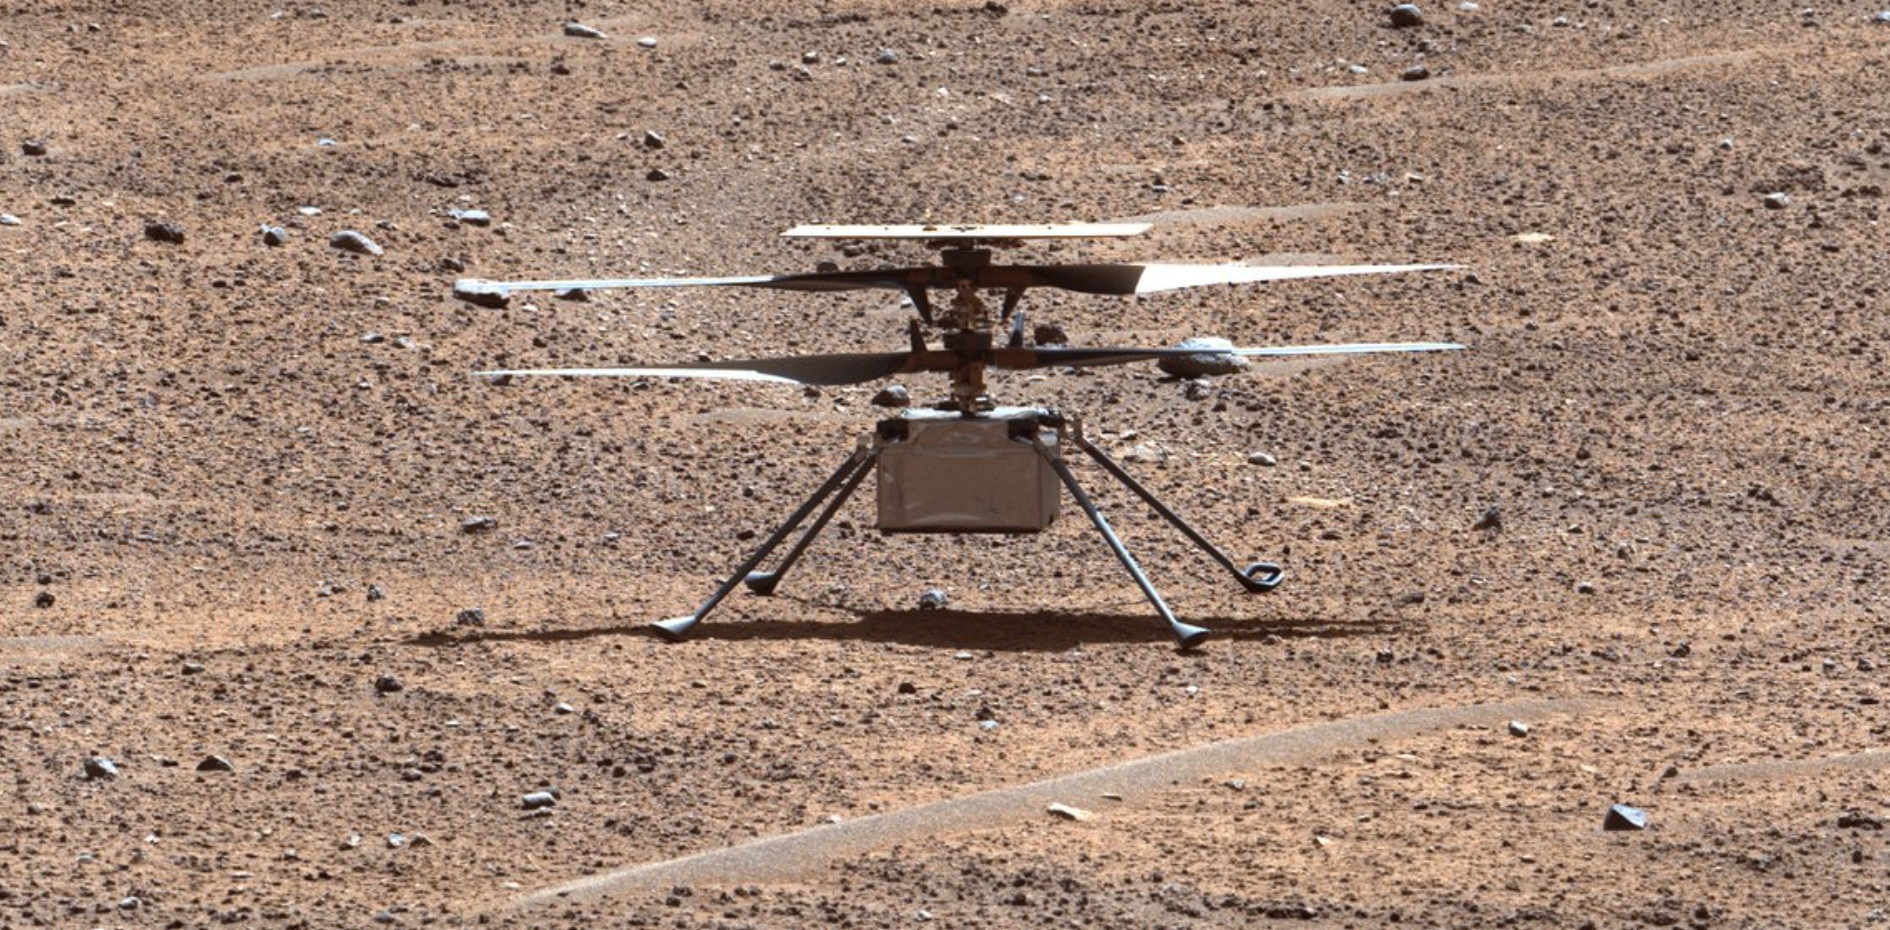 Imagen en color mejorado del helicóptero Ingenuity posado sobre la superficie rojiza marciana. El pequeño helicóptero tiene cuatro patas delgadas y cuatro aspas.